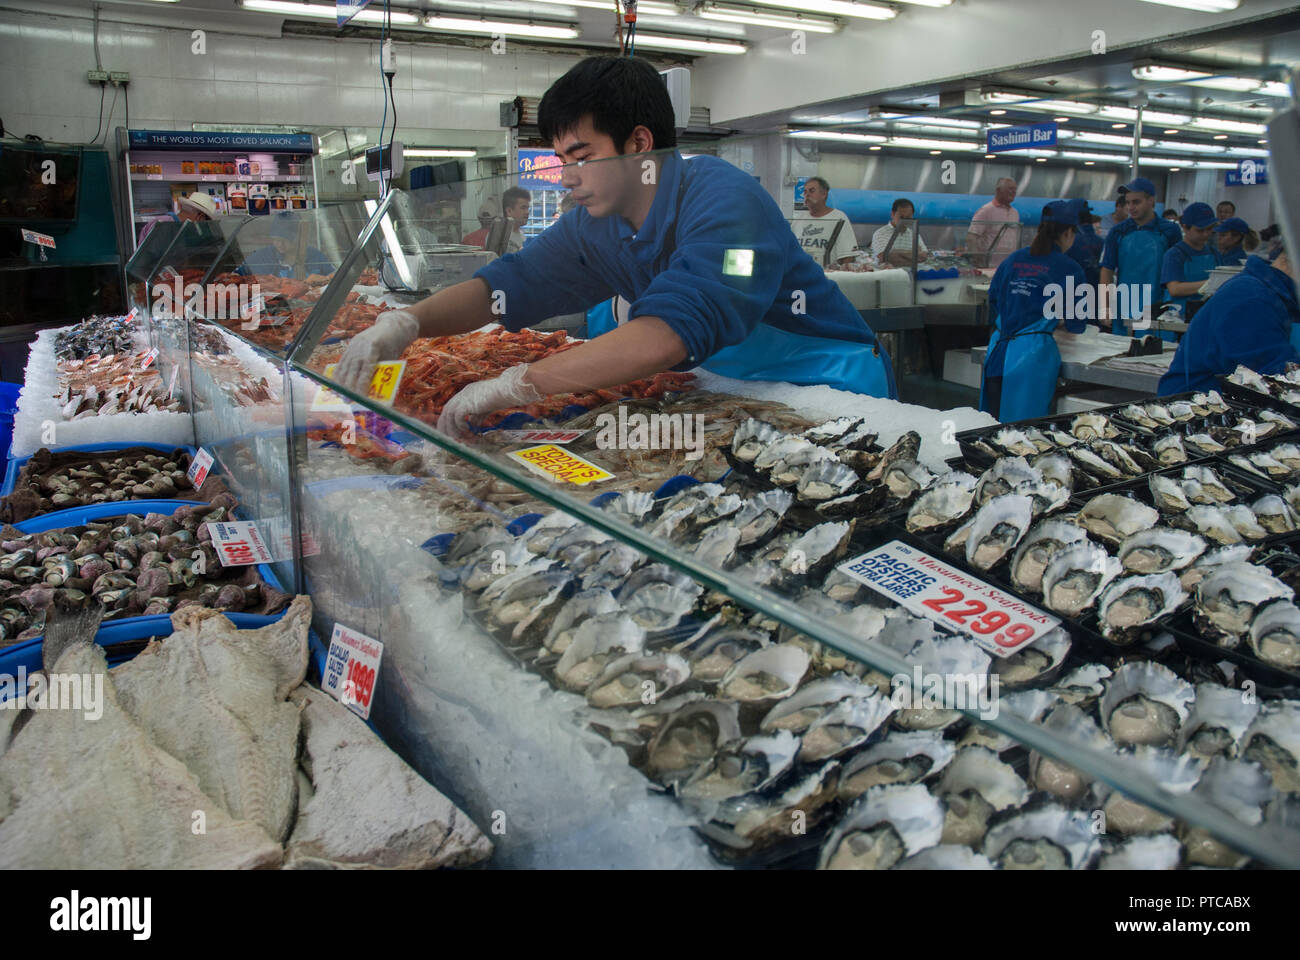 Innerhalb der Sydney Fish Market mit gut beleuchteten Ständen und Zähler in verschiedenen Fisch, Austern und Meeresfrüchte. Stockfoto